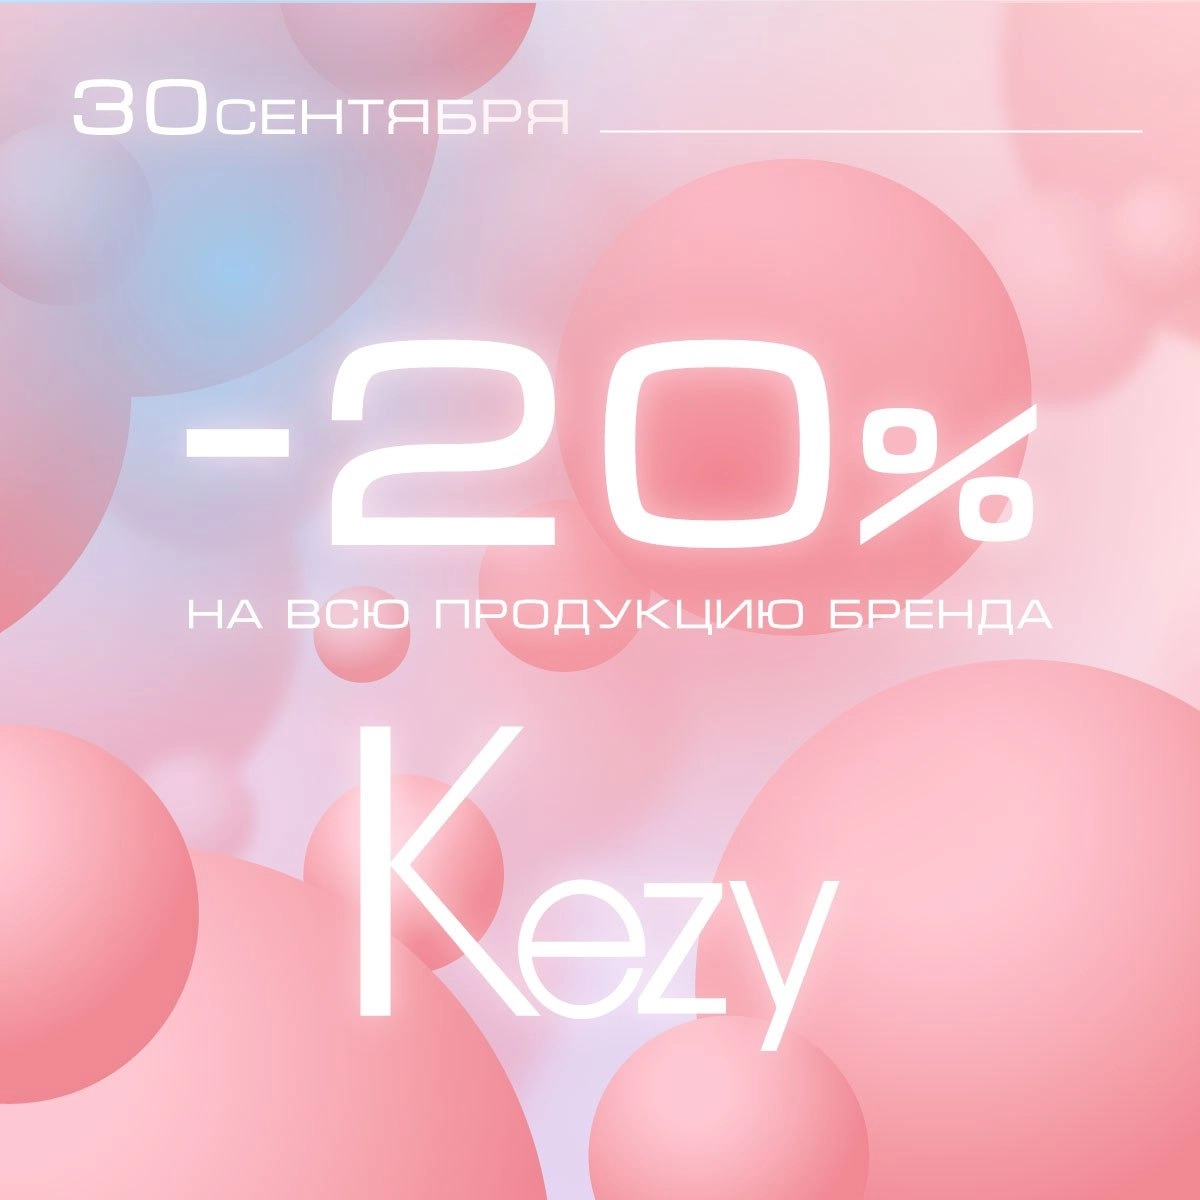 Акция на бренд KEZY -20%